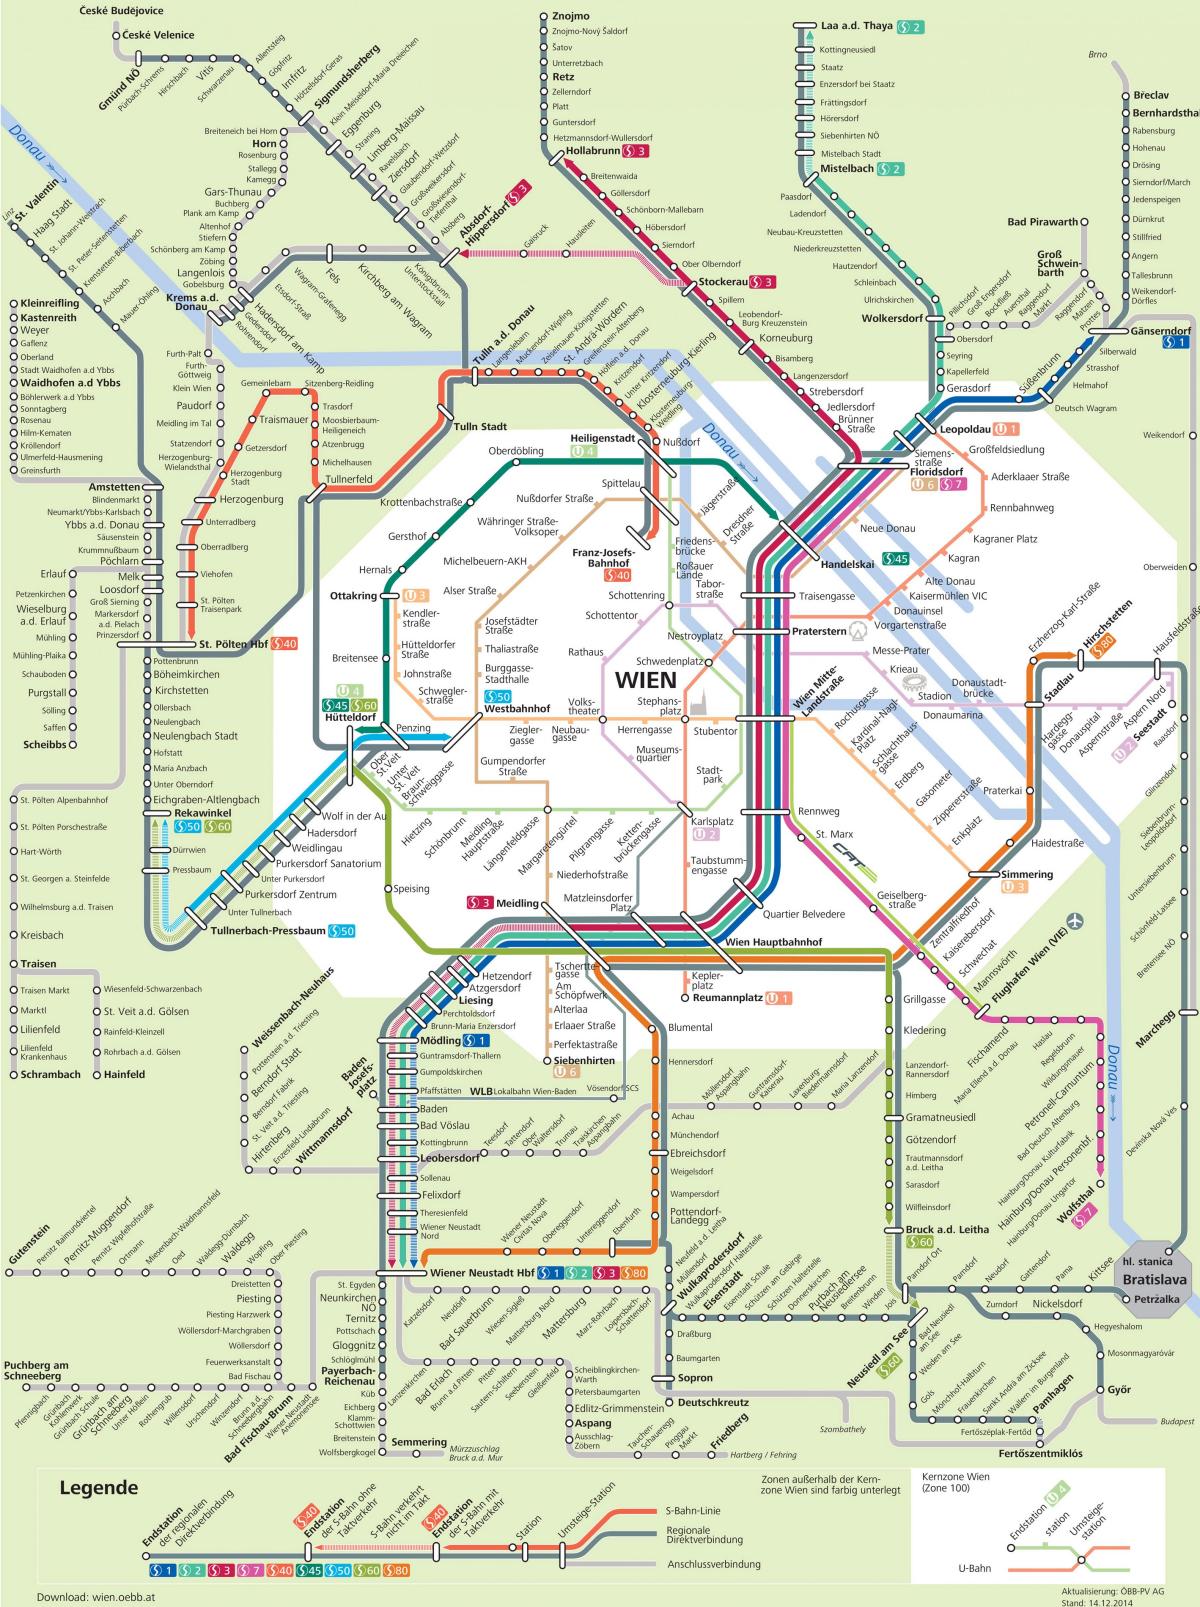 Térkép Bécs s7 útvonal